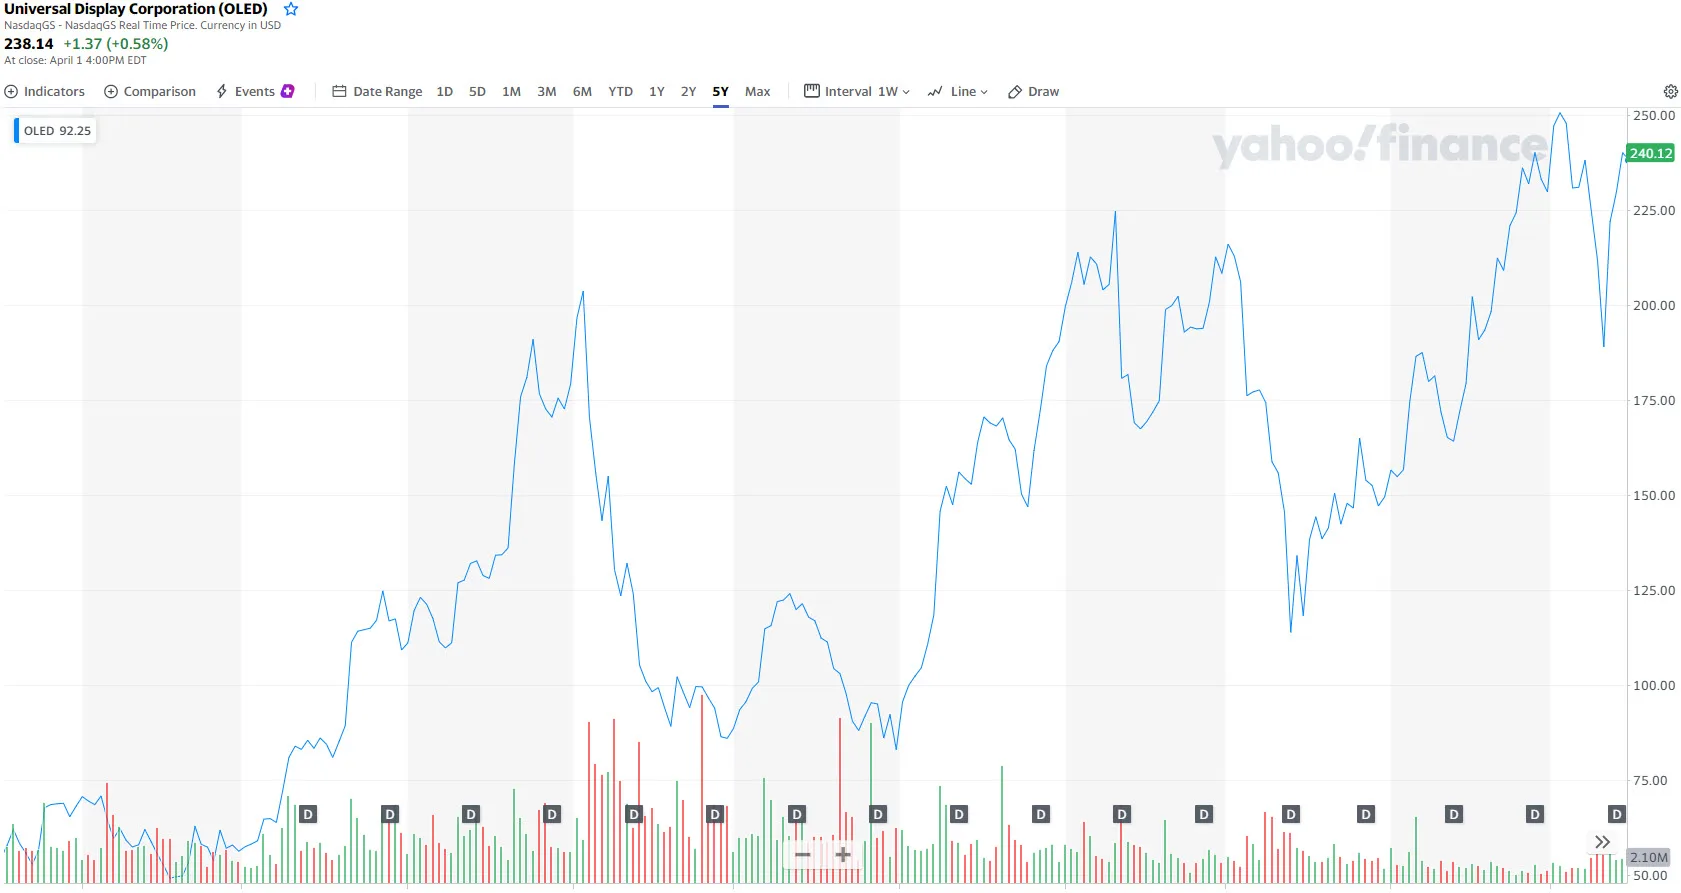 Yahoo UDC Stock Price